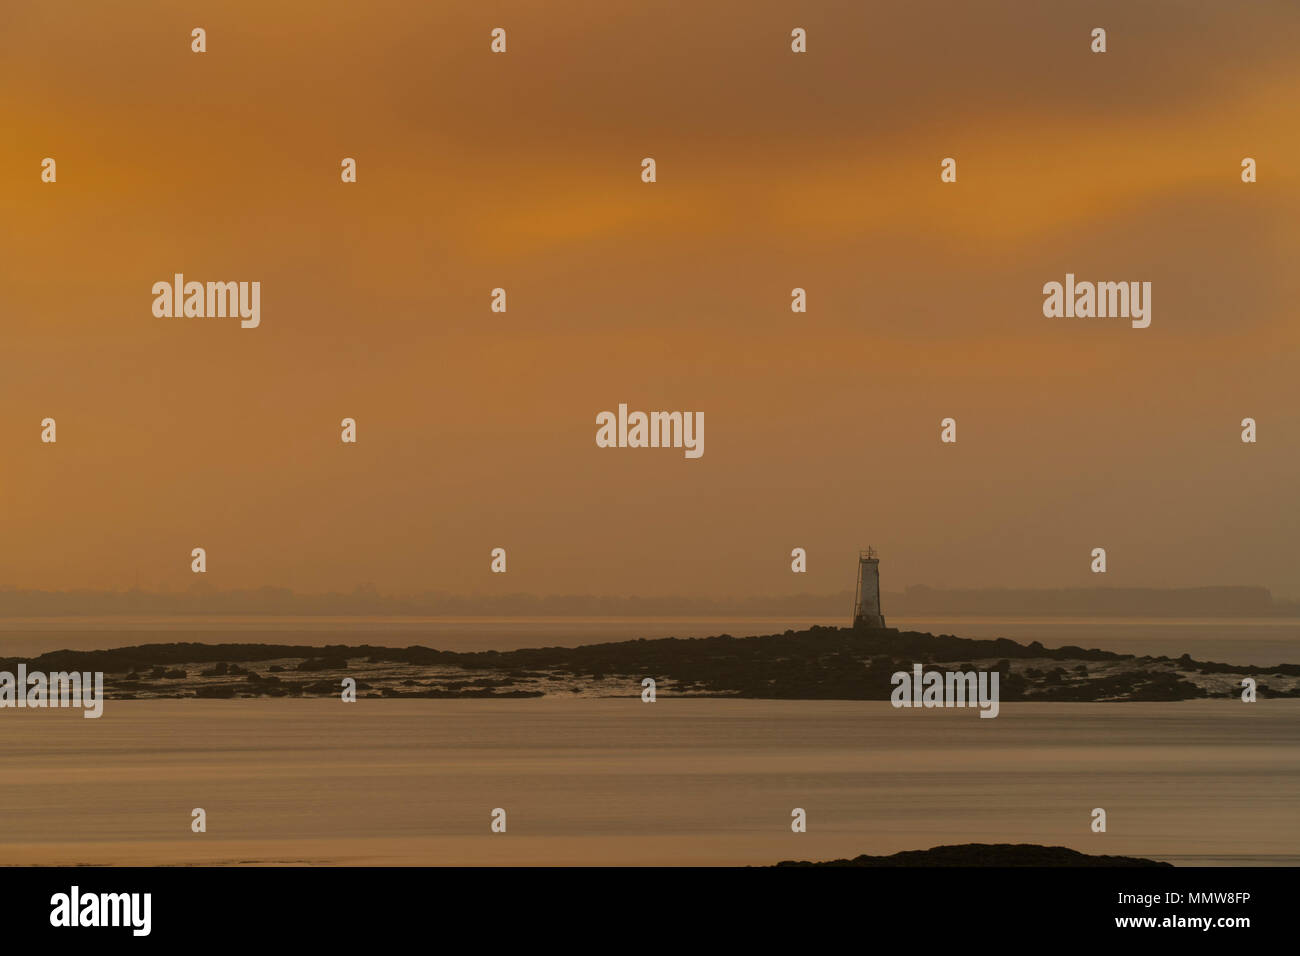 Image de phare au large de la côte prise au lever du soleil. Matin luisent. Lumière, ciel. Banque D'Images